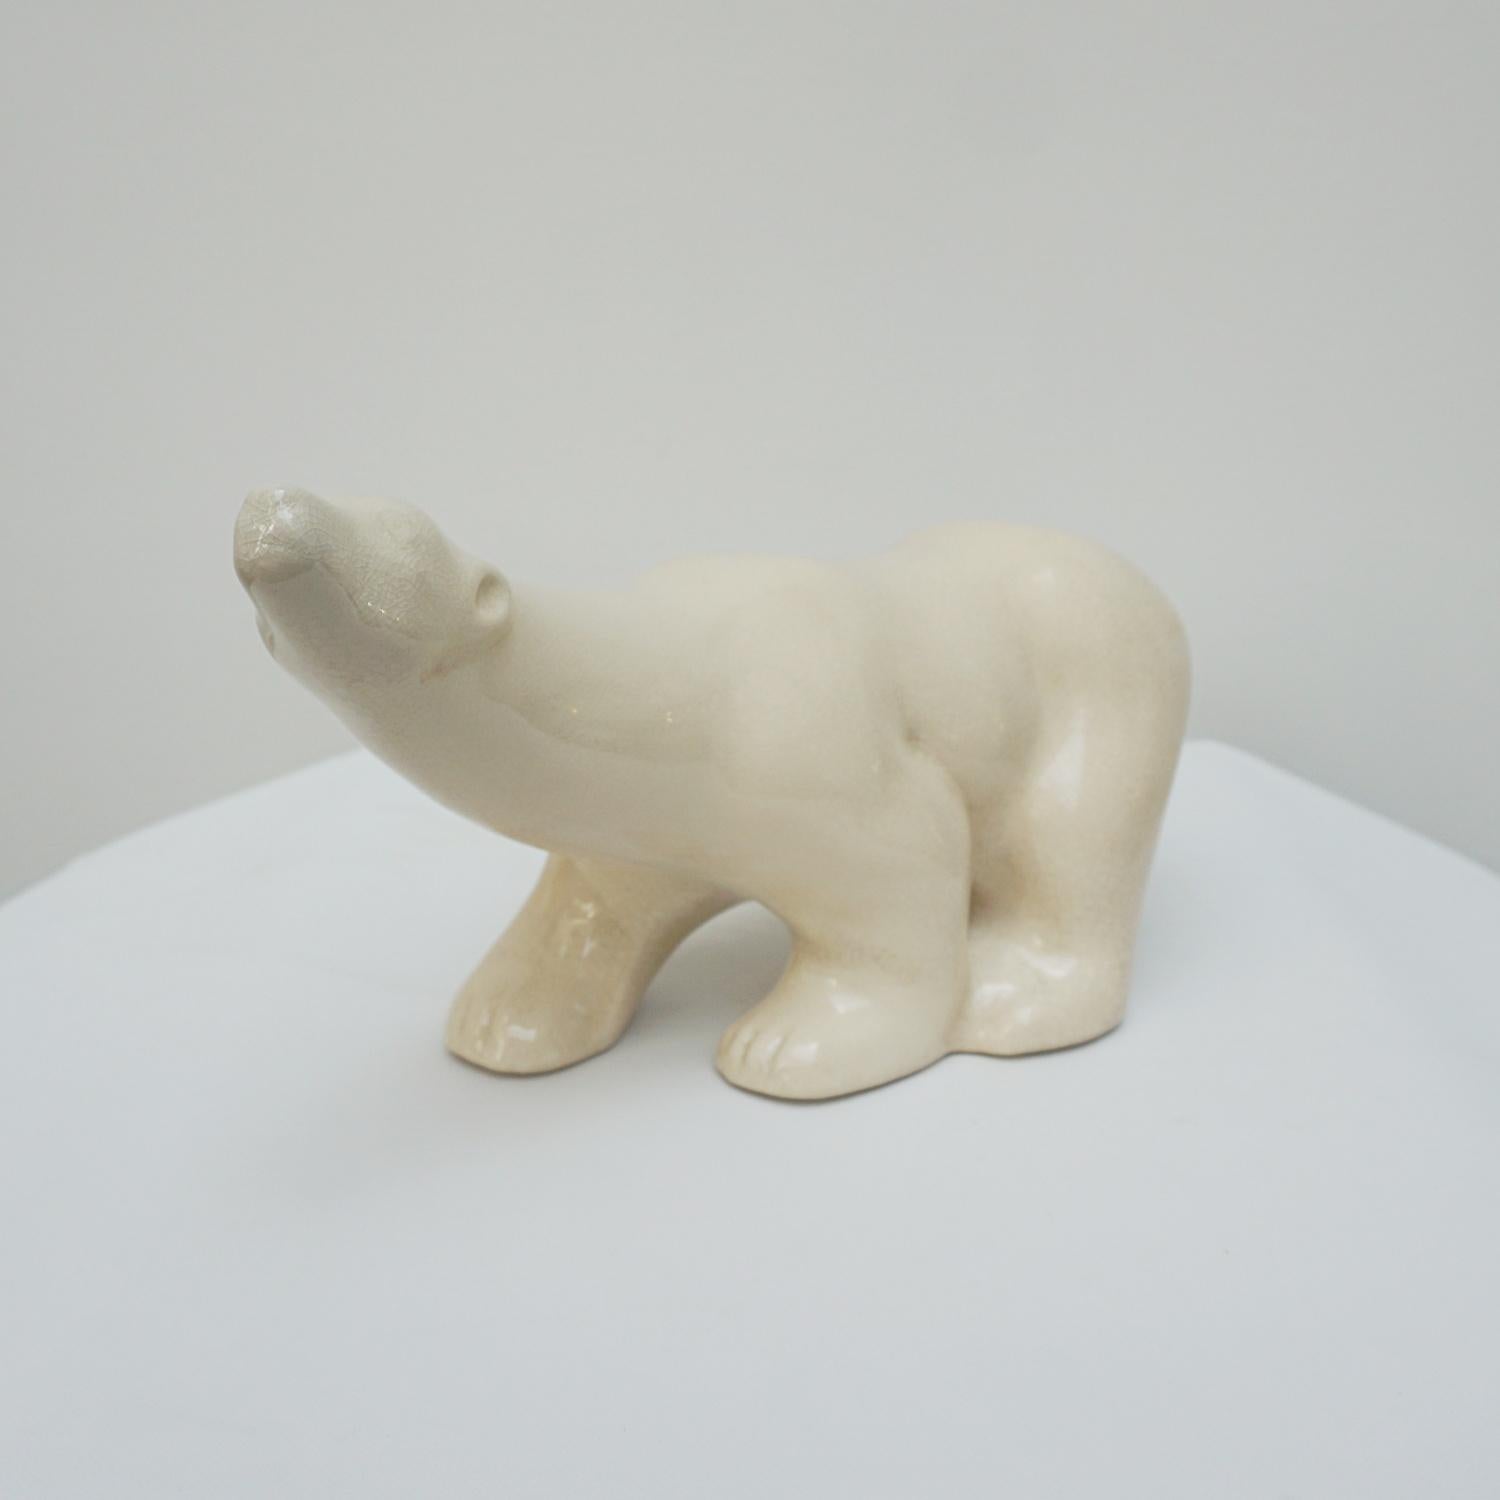 Grand ours polaire en glace Art déco attribué à Pierre Chanet. Glaçure craquelée crème, marquée 